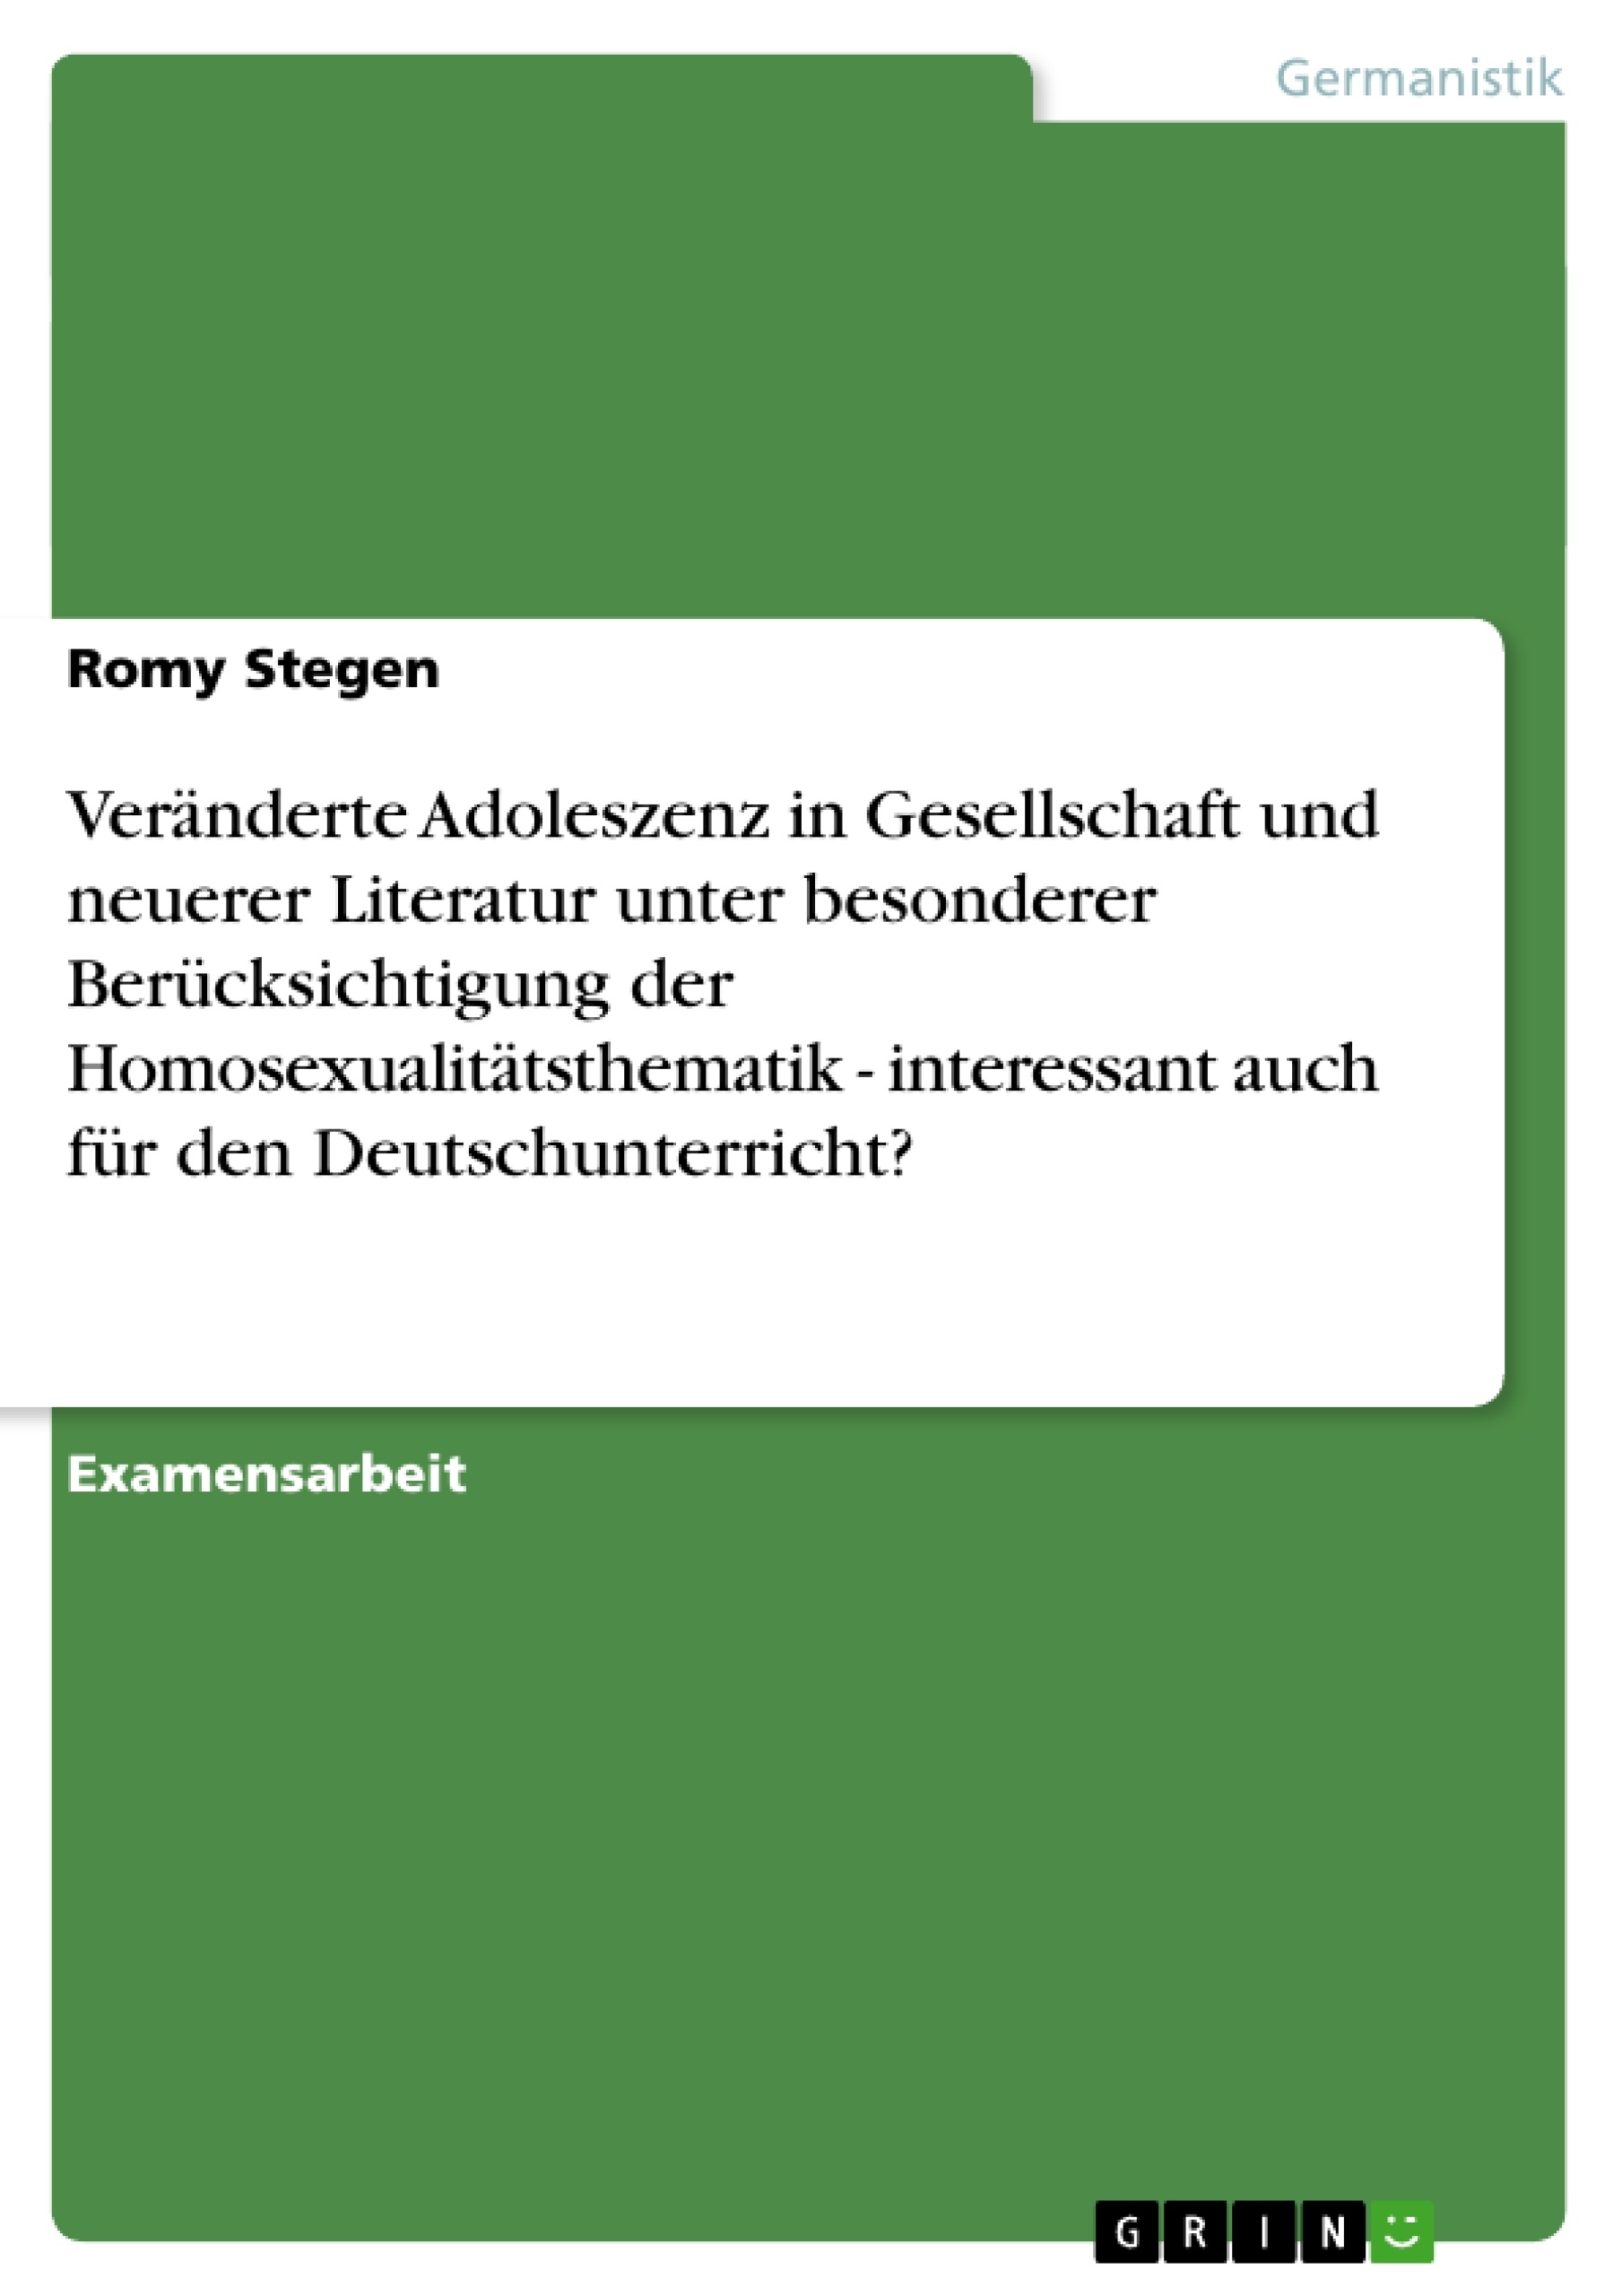 Titre: Veränderte Adoleszenz in Gesellschaft und neuerer Literatur unter besonderer Berücksichtigung der Homosexualitätsthematik - interessant auch für den Deutschunterricht?